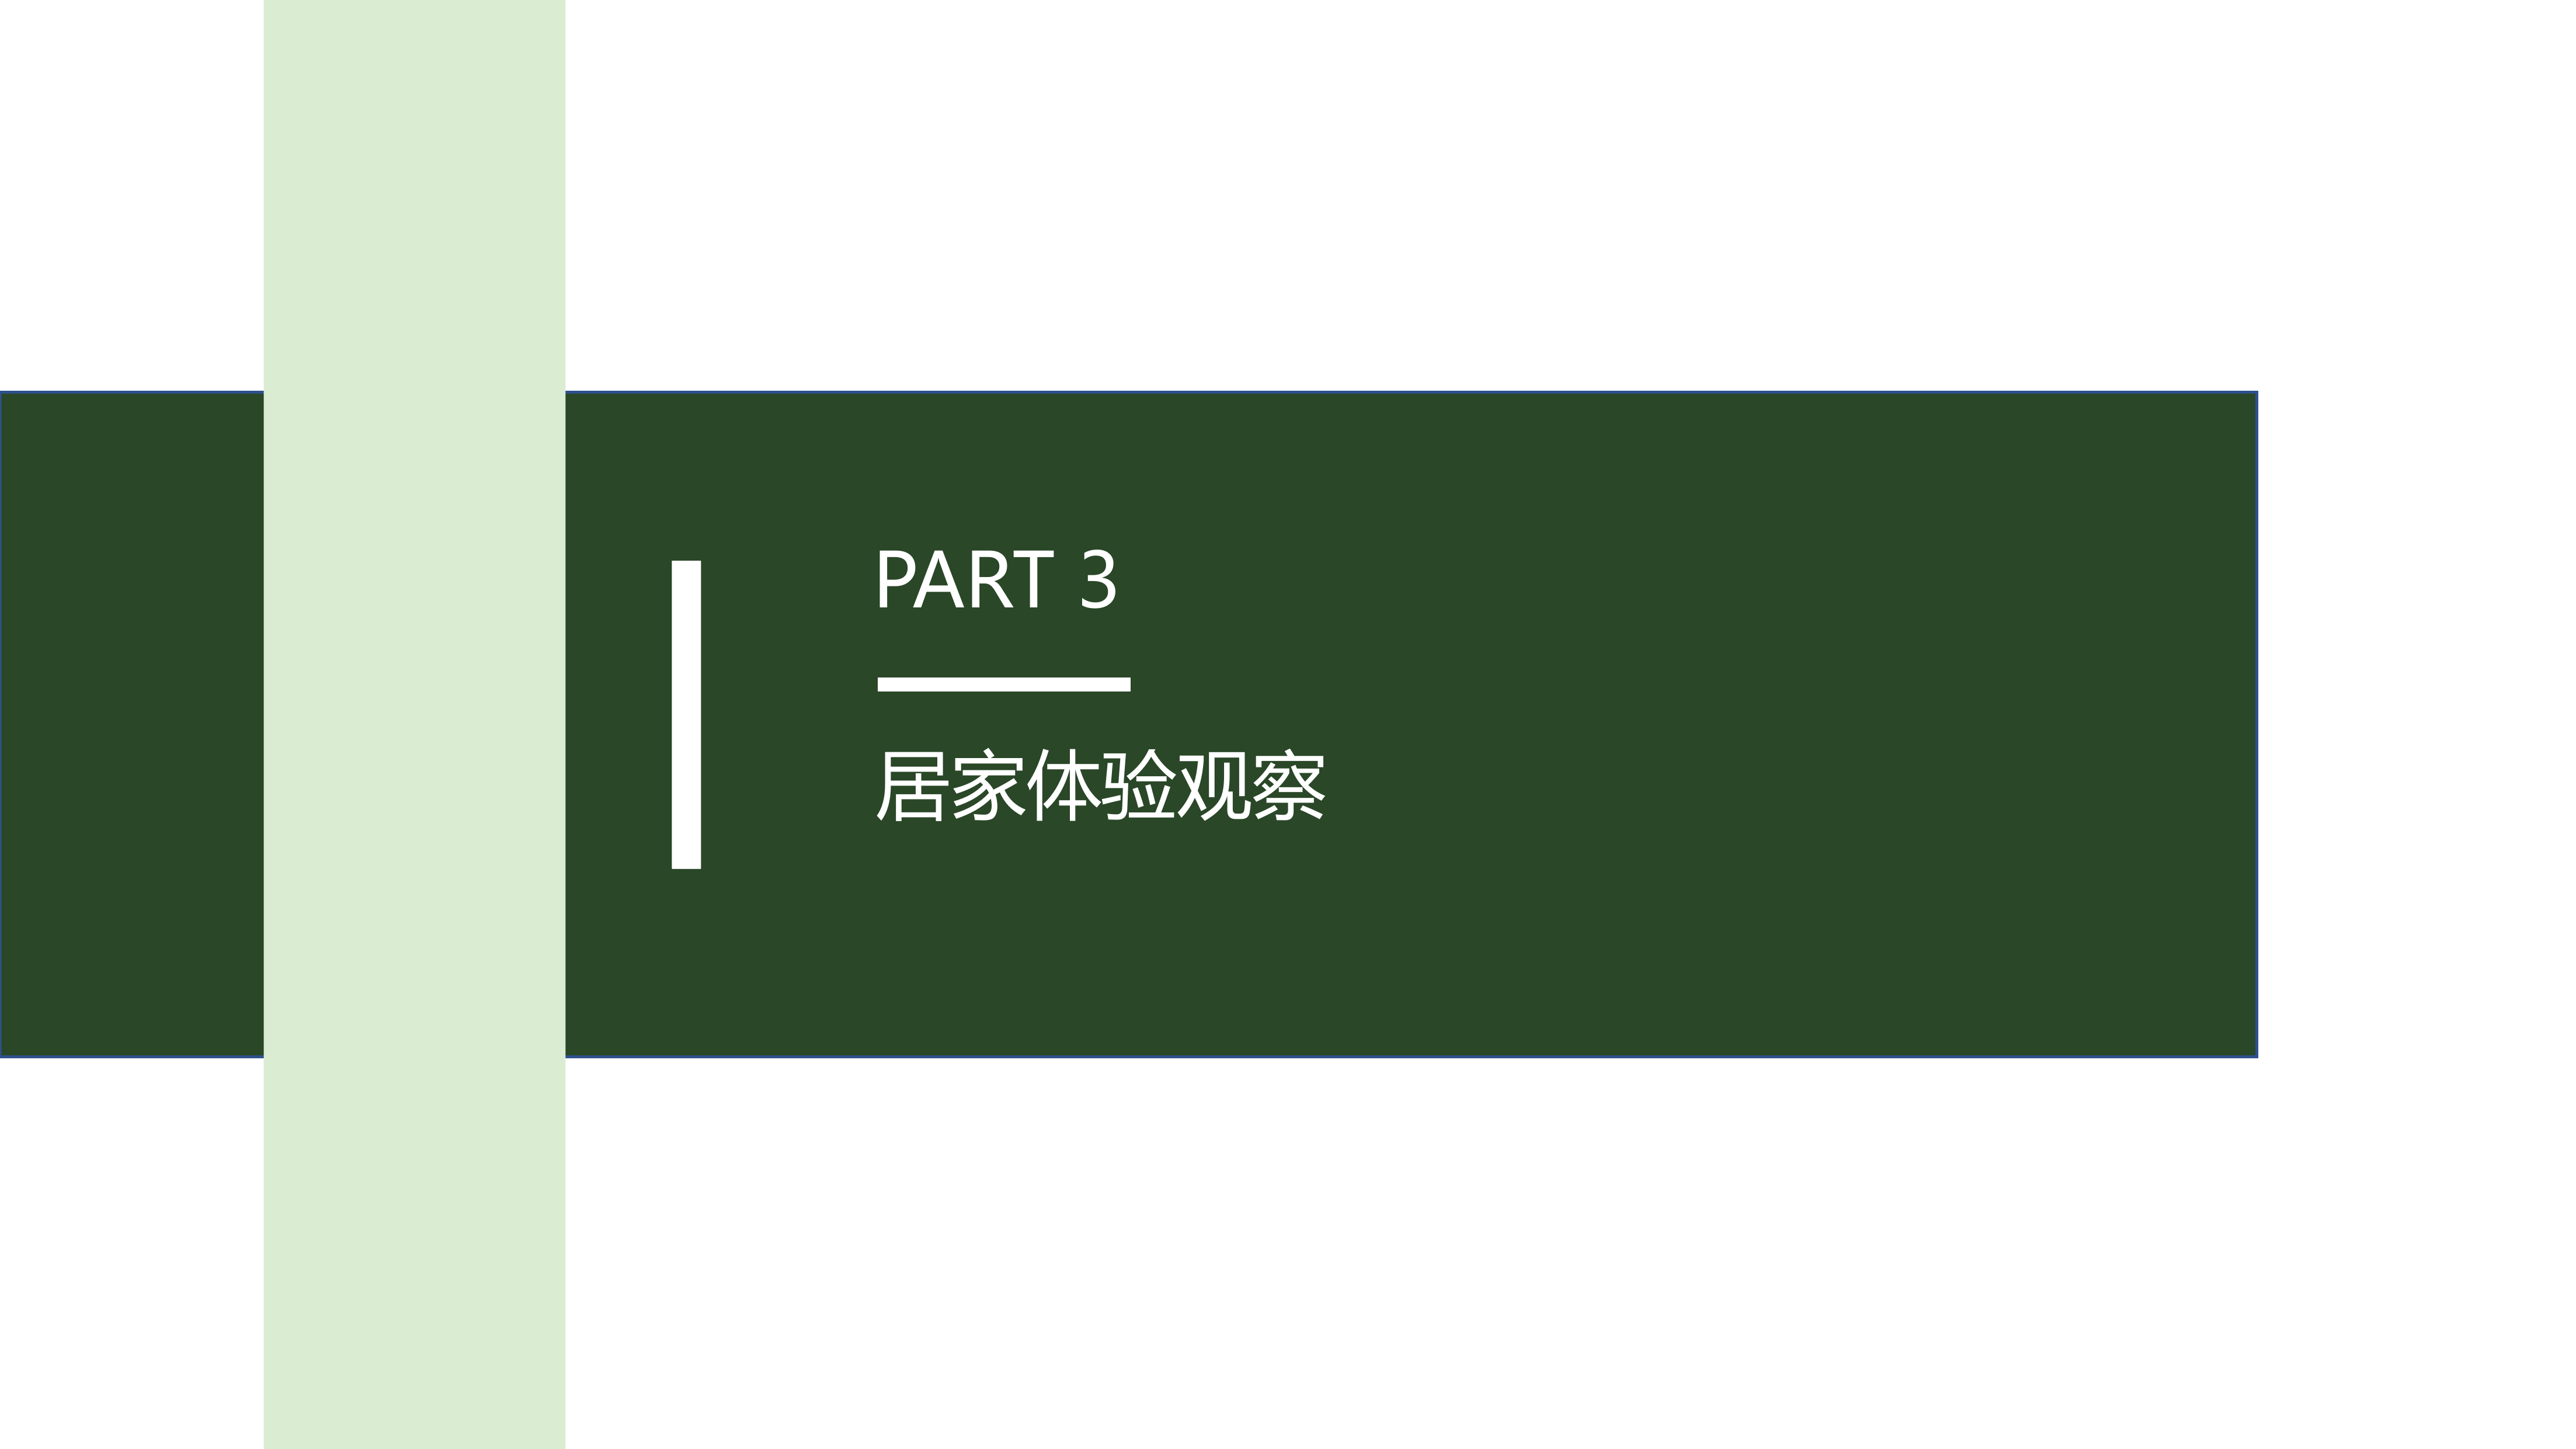 36氪研究院&生活家装饰联合发布《美好生活绿皮书》